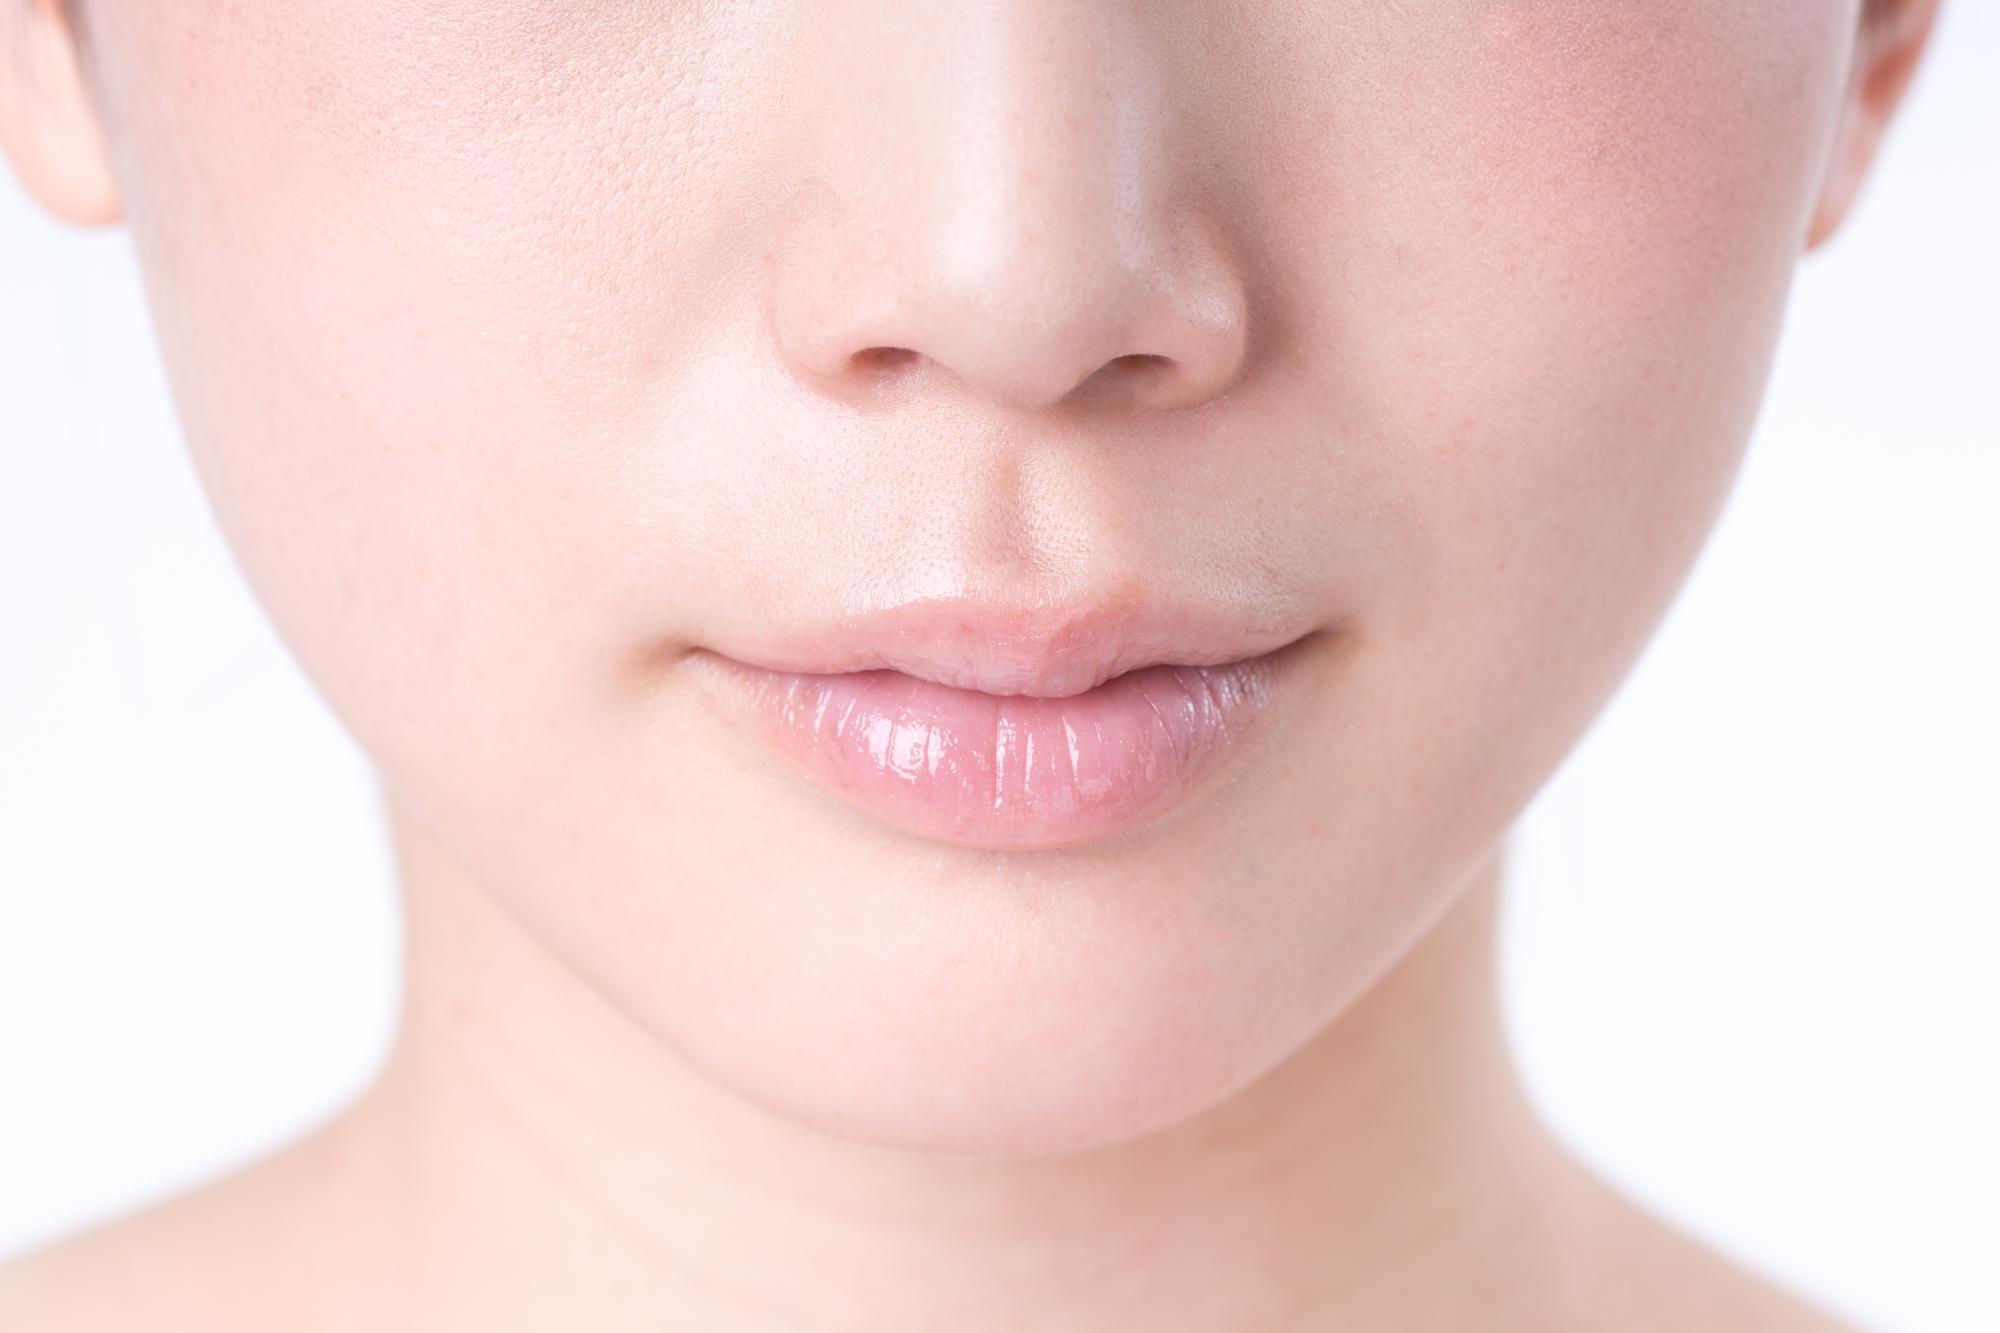 医師監修 唇ケアに効果的な方法とは 唇の日焼け対策とアフターケア